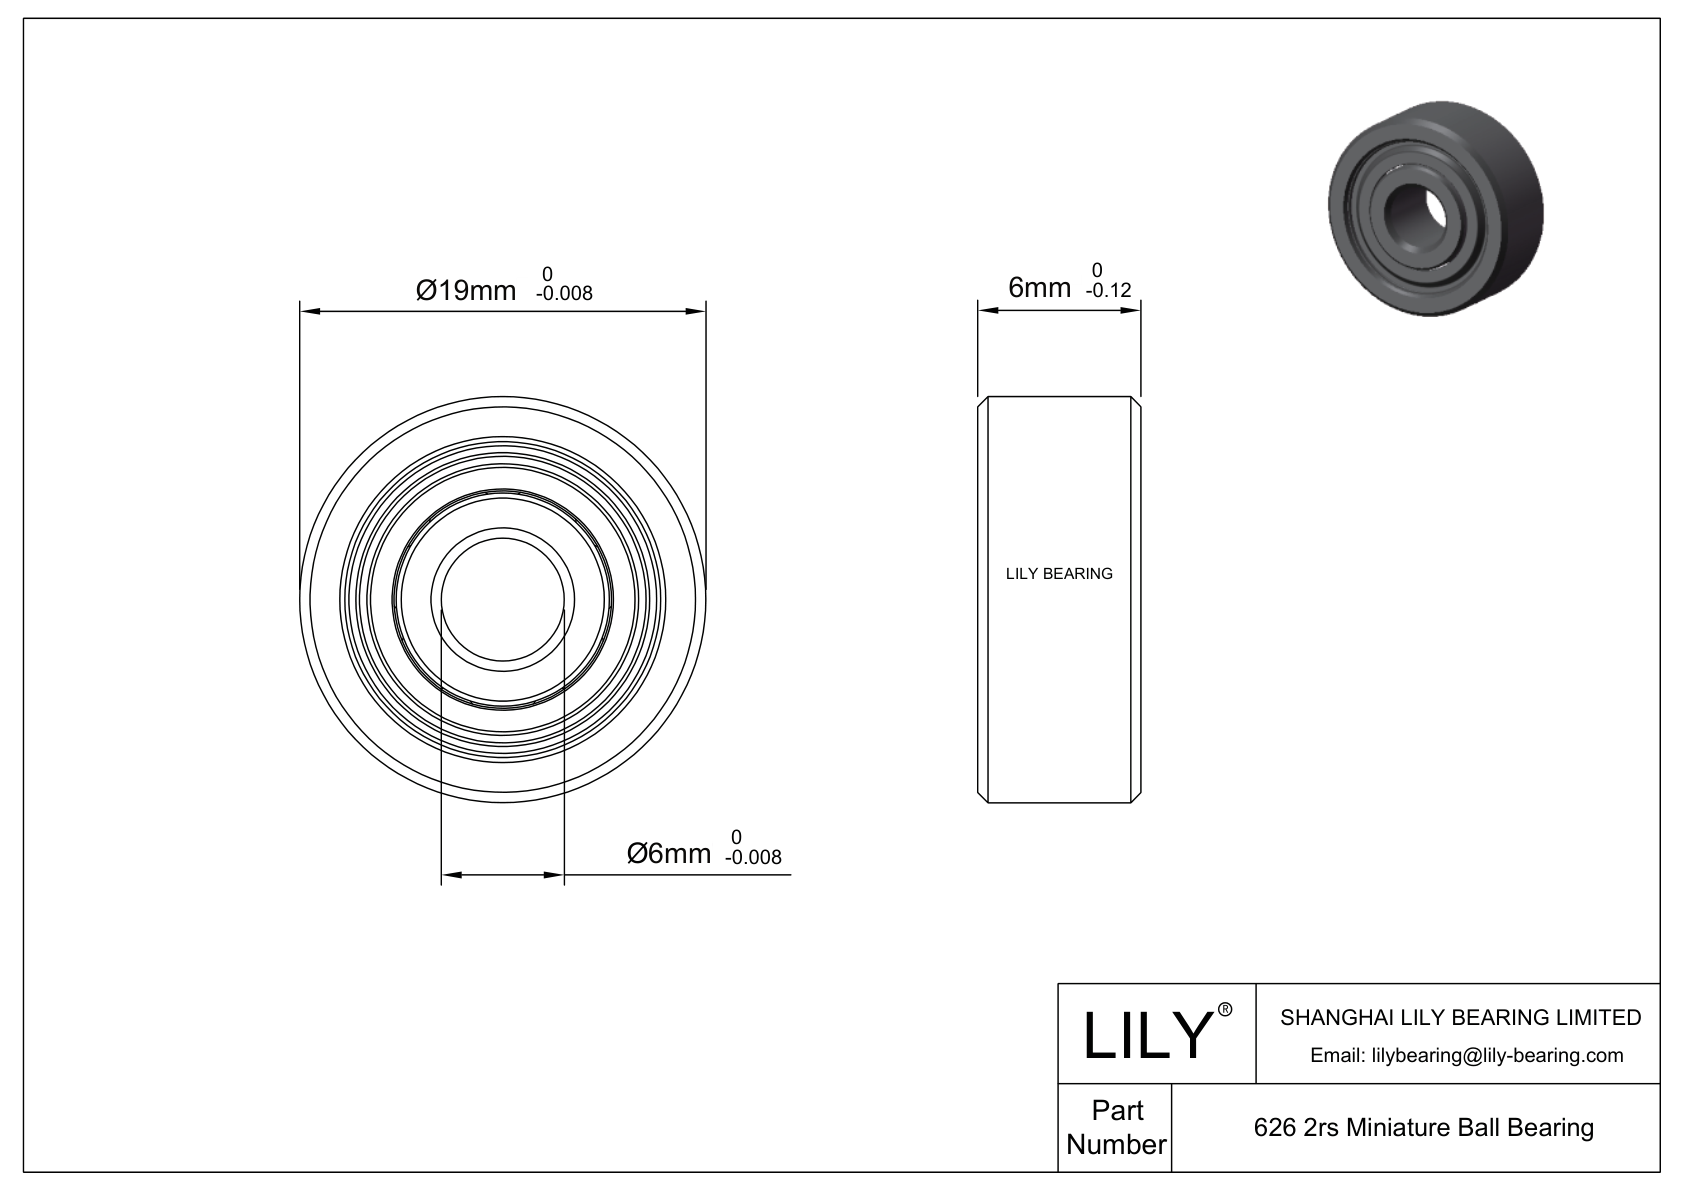 LILY-PUFL62630-10W16 Polyurethane Flywheel cad drawing